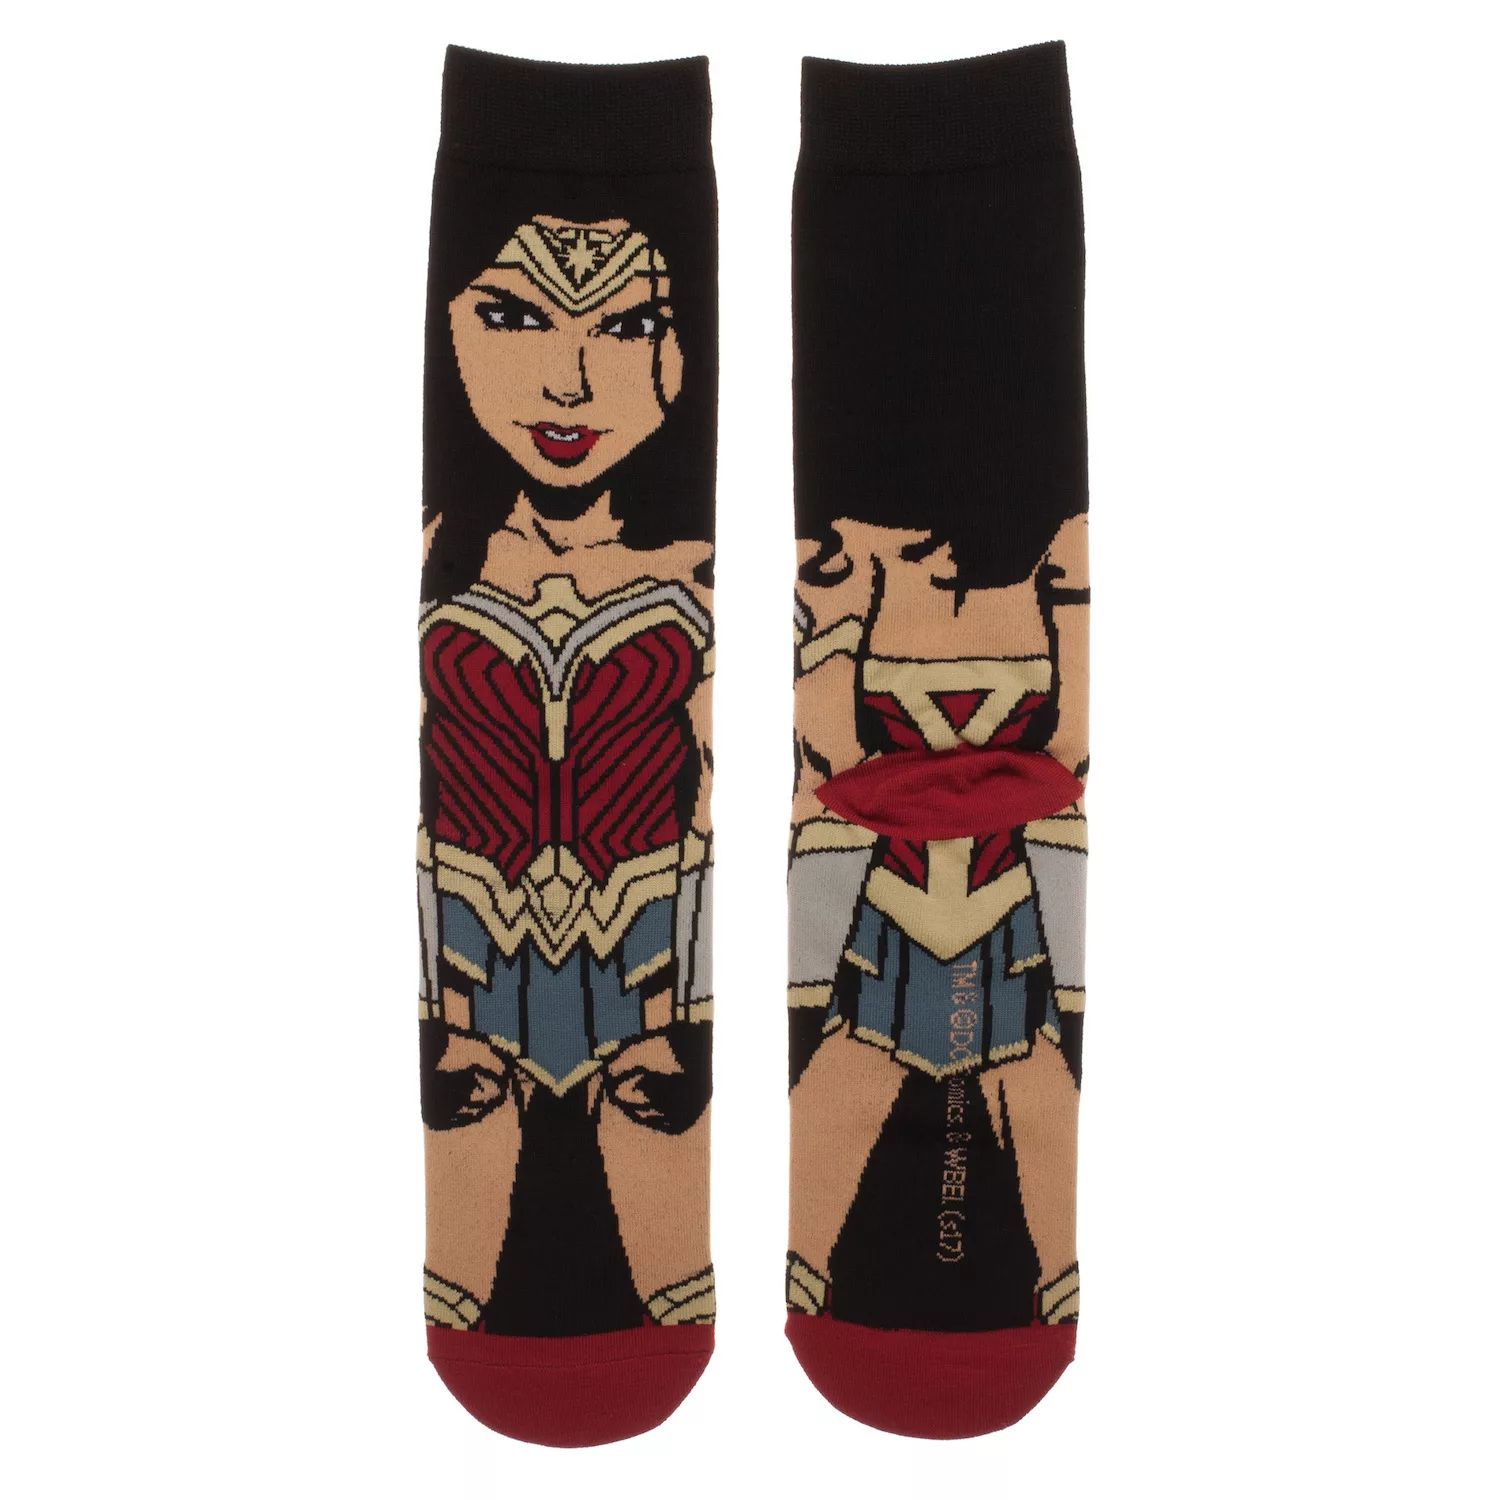 Мужские носки DC Comics Wonder Woman Movie Crew Licensed Character носки dc comics pixel – wonder woman белые